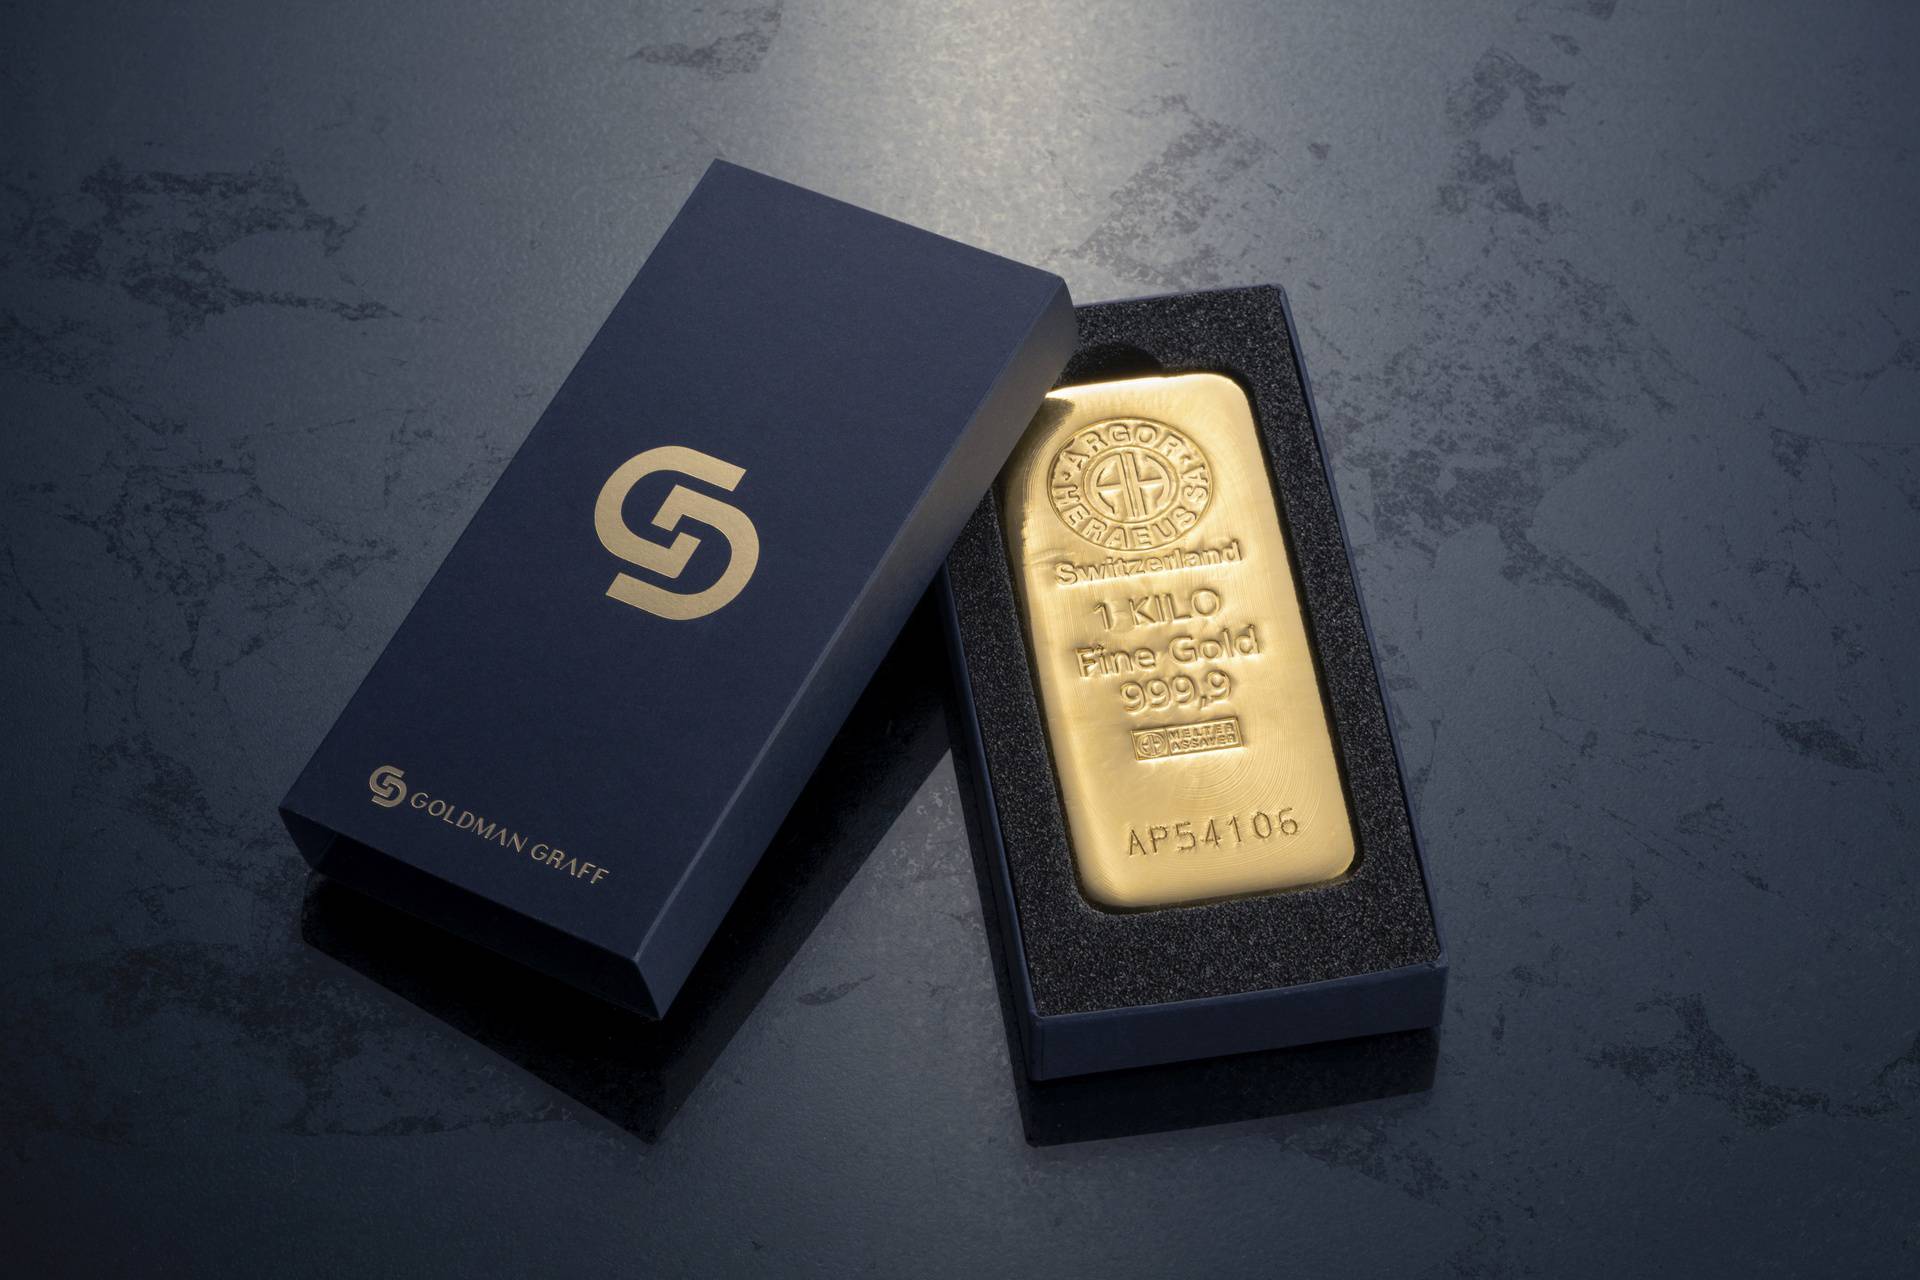 Goldman Graff je prvi izbor za investicijsko zlato: Sigurnost, kvaliteta i stručnost